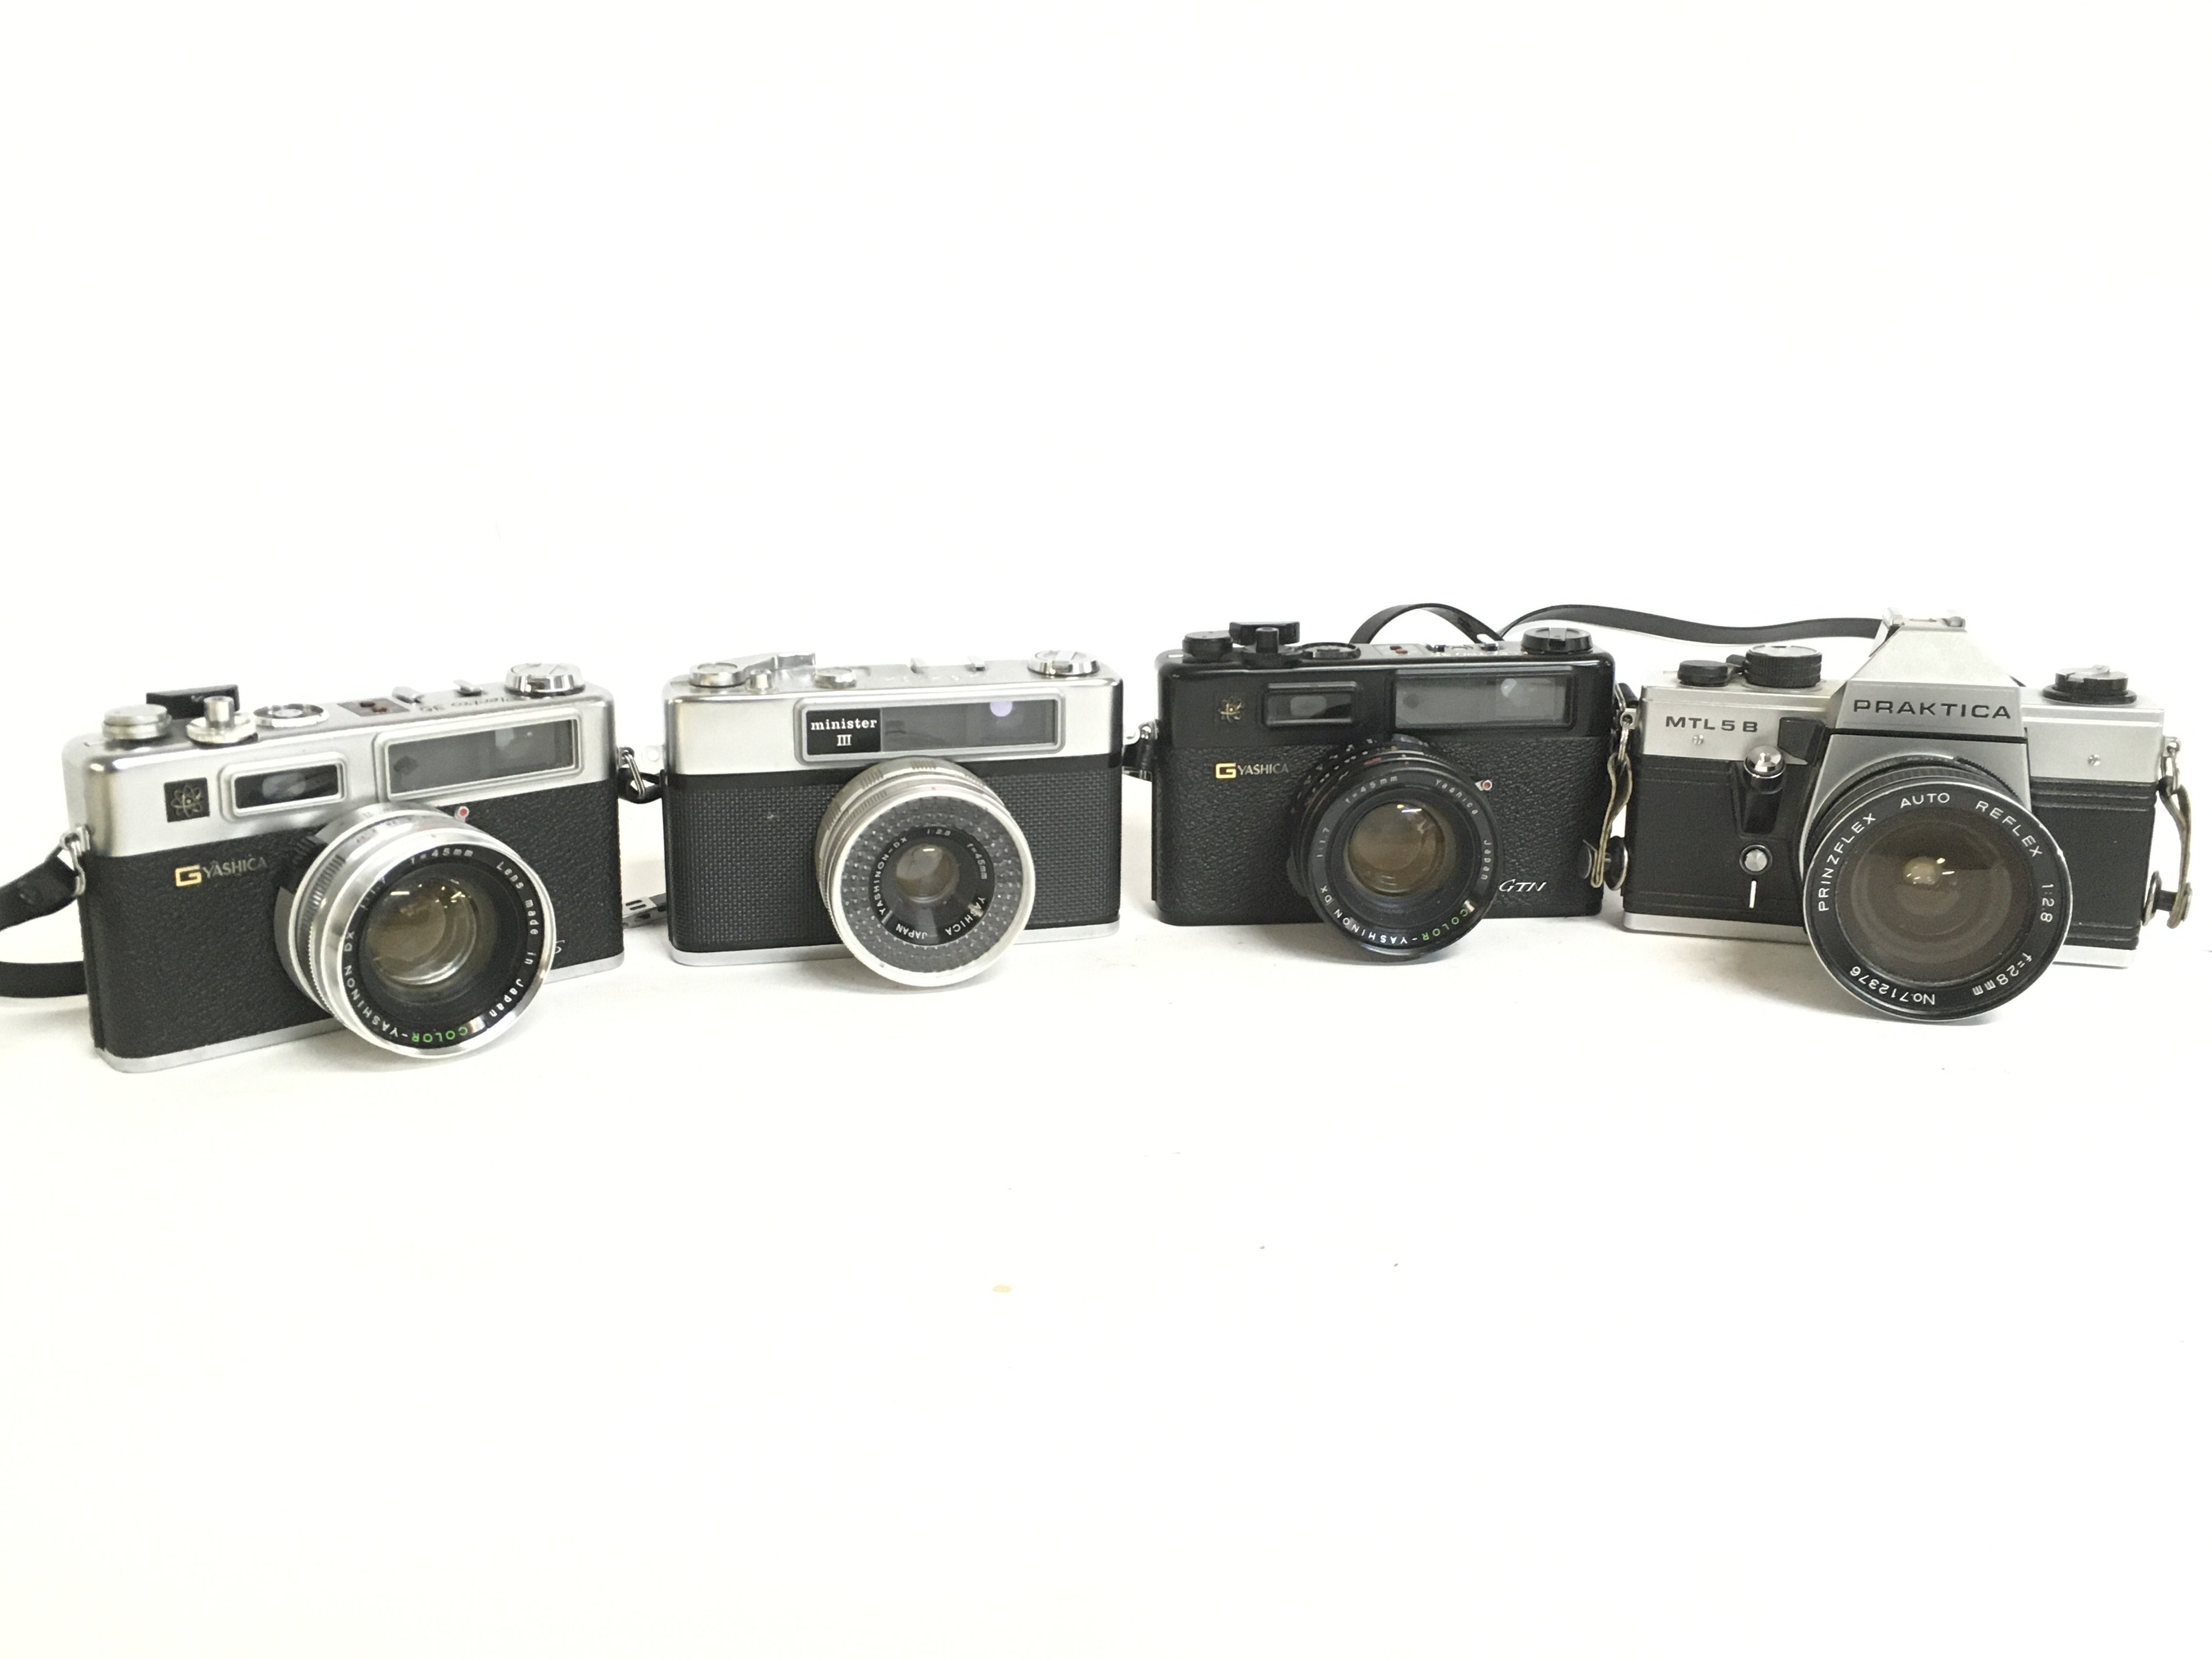 Vintage cameras including a Minister III, Praktica